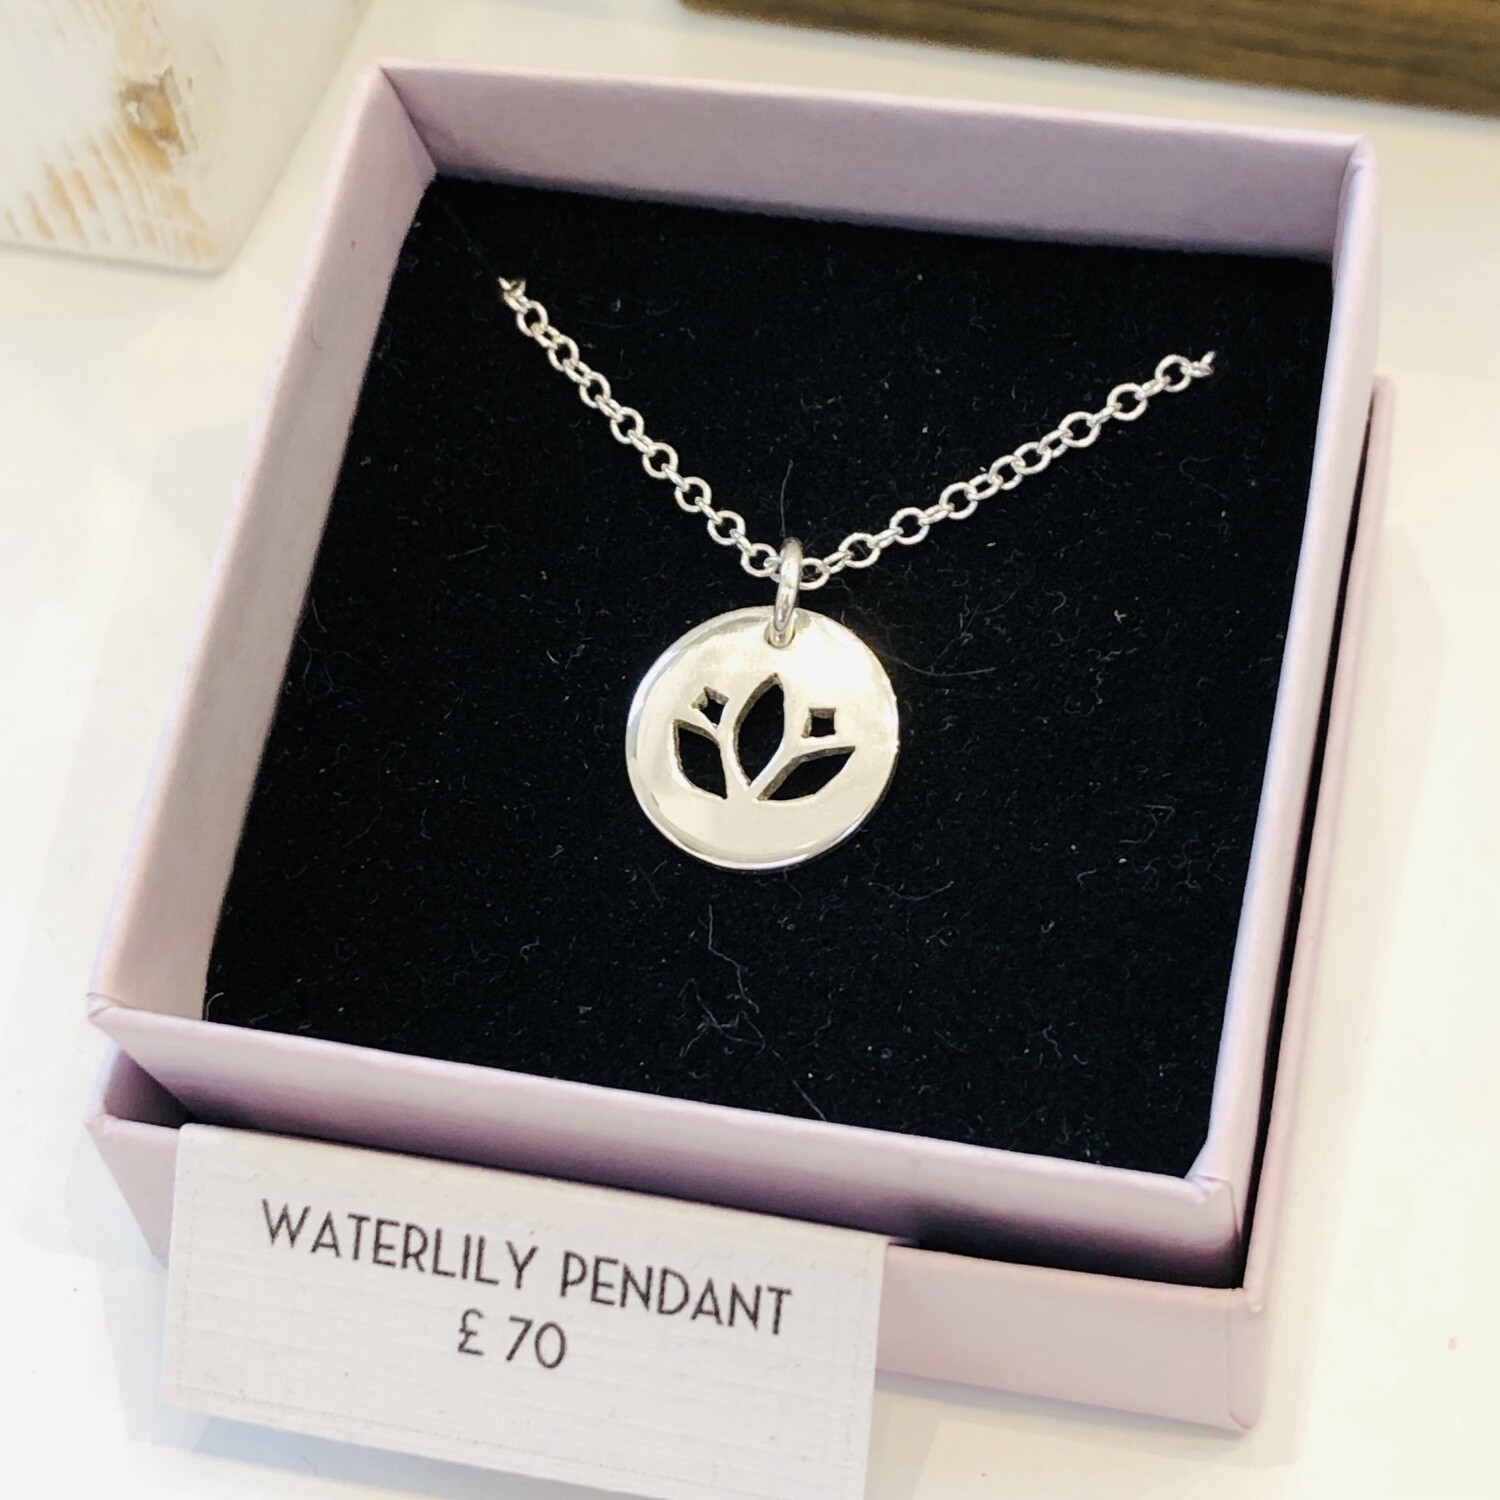 Waterlily/ lotus pendant